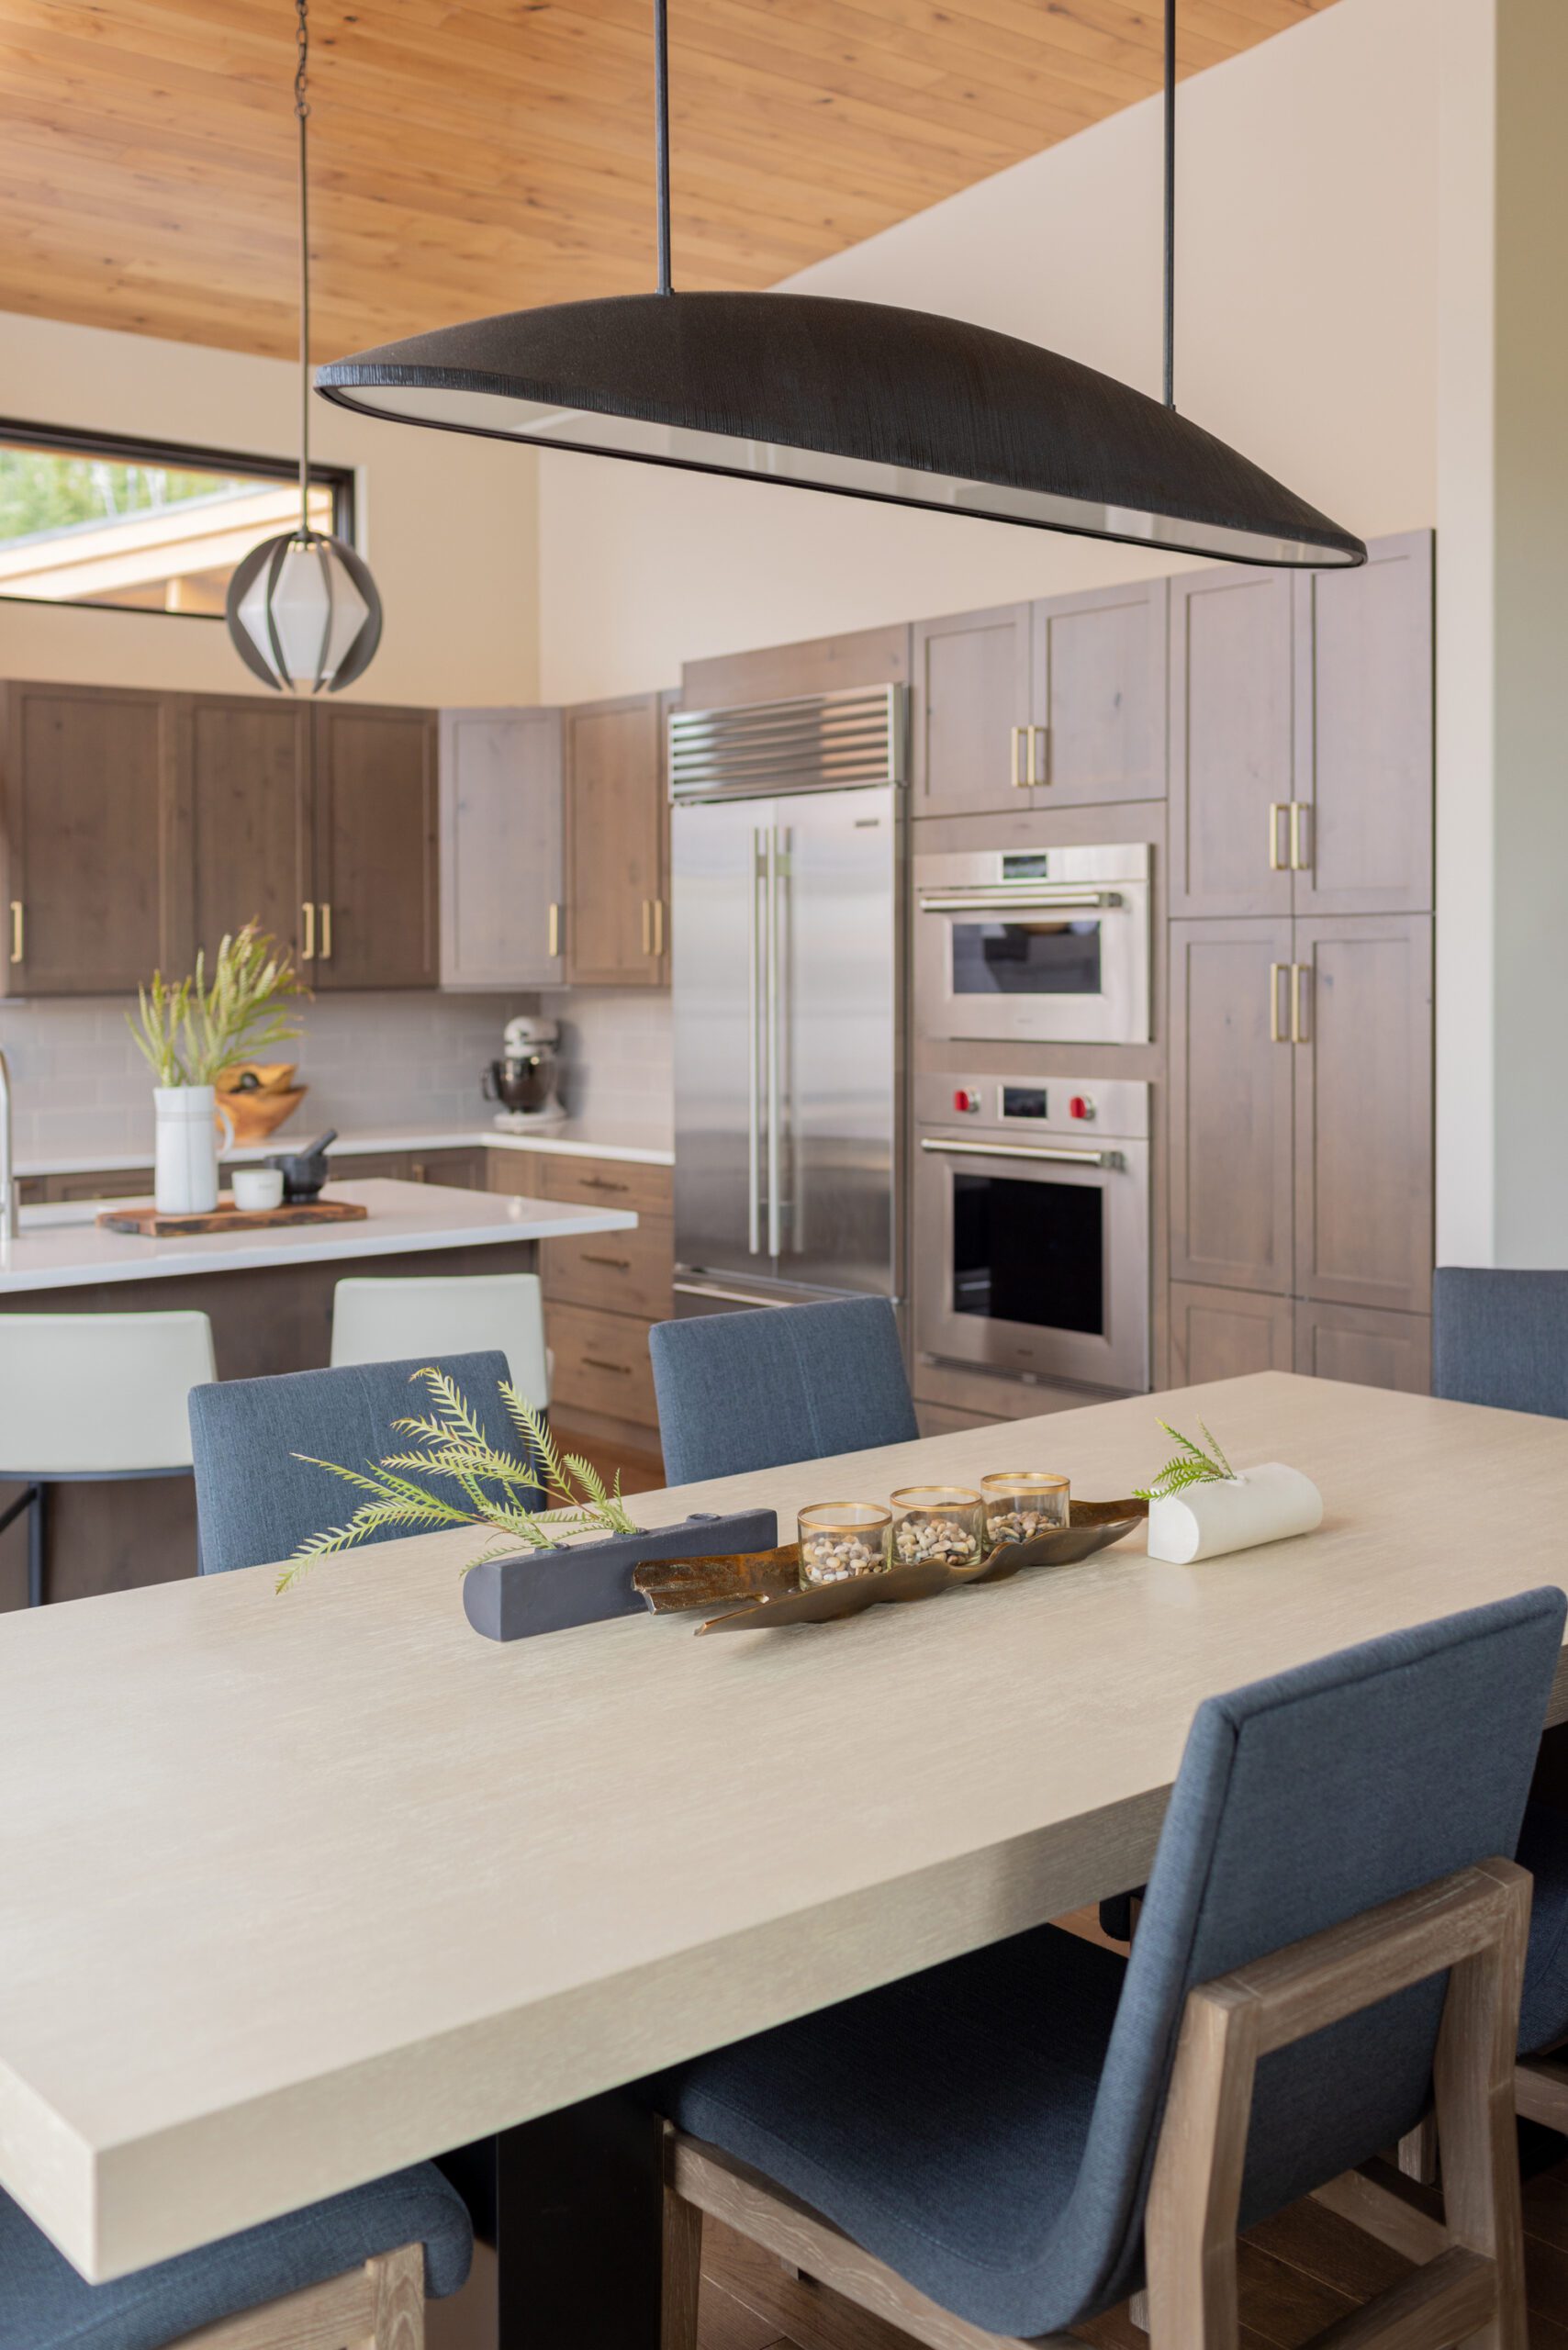 Modern kitchen interior design by Kirkendall Design in Tulsa OK